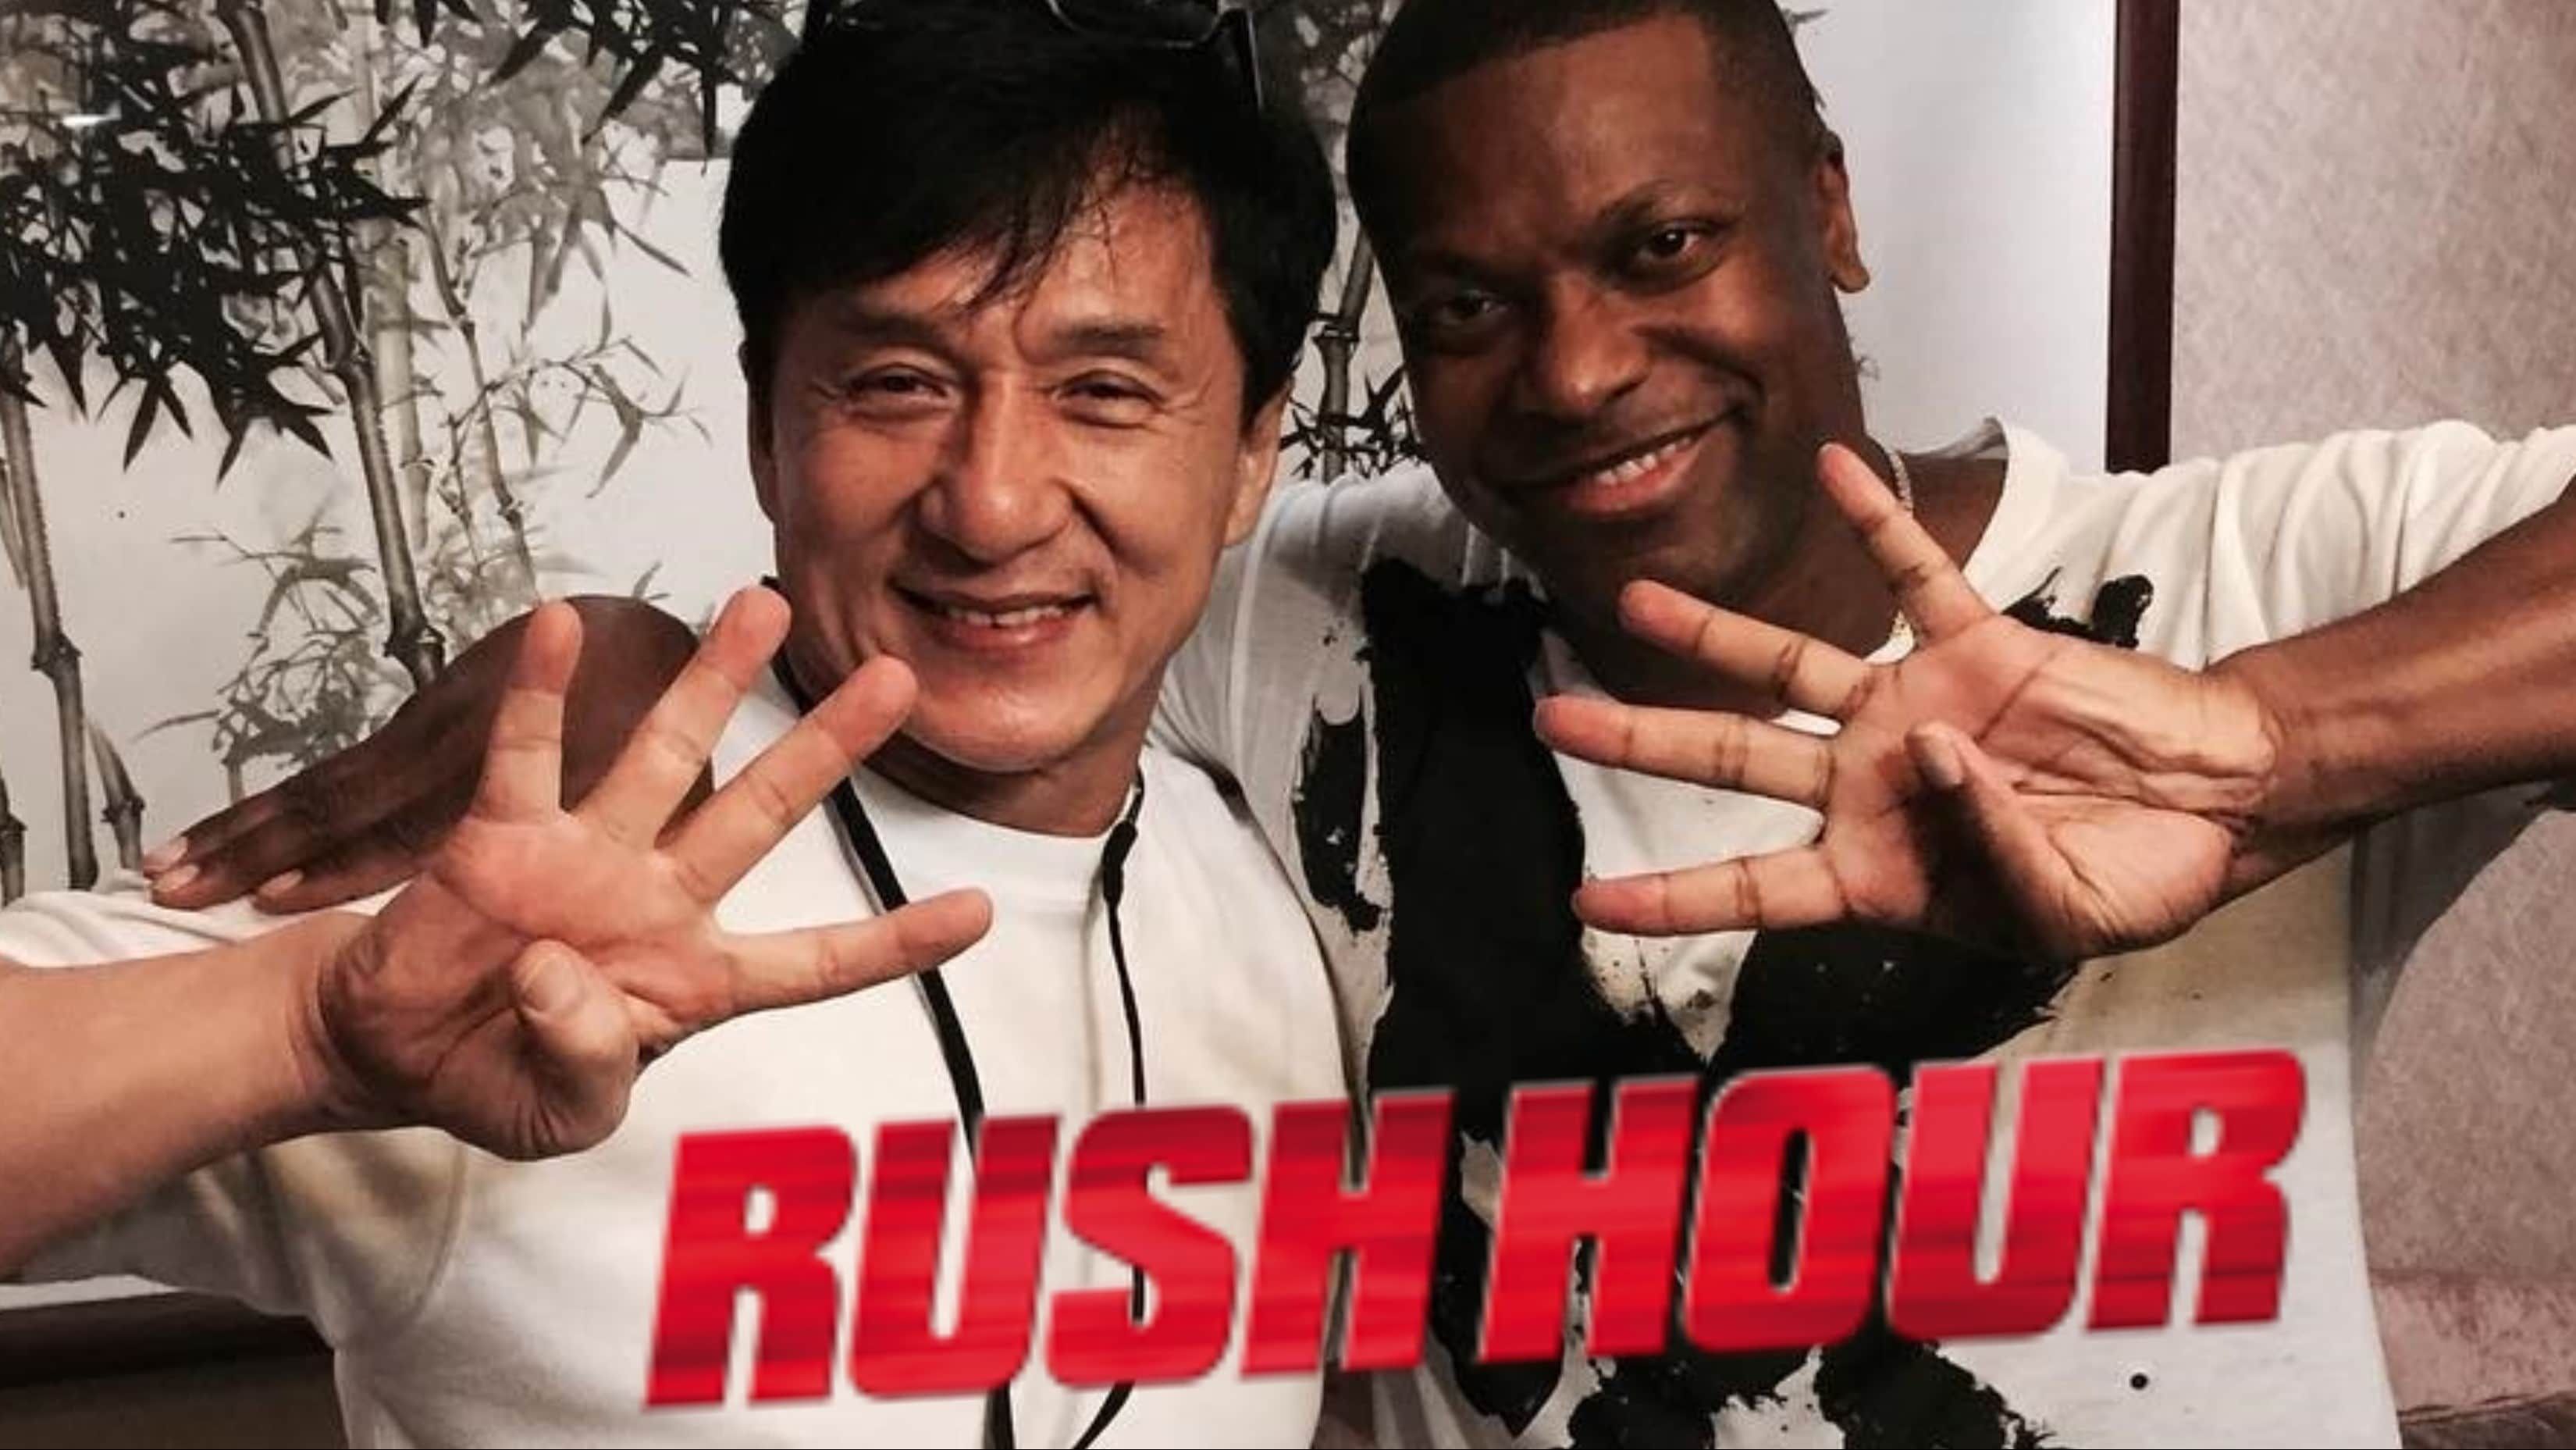 اشارهی جکی چان و کریس توکر به فیلم Rush Hour 4